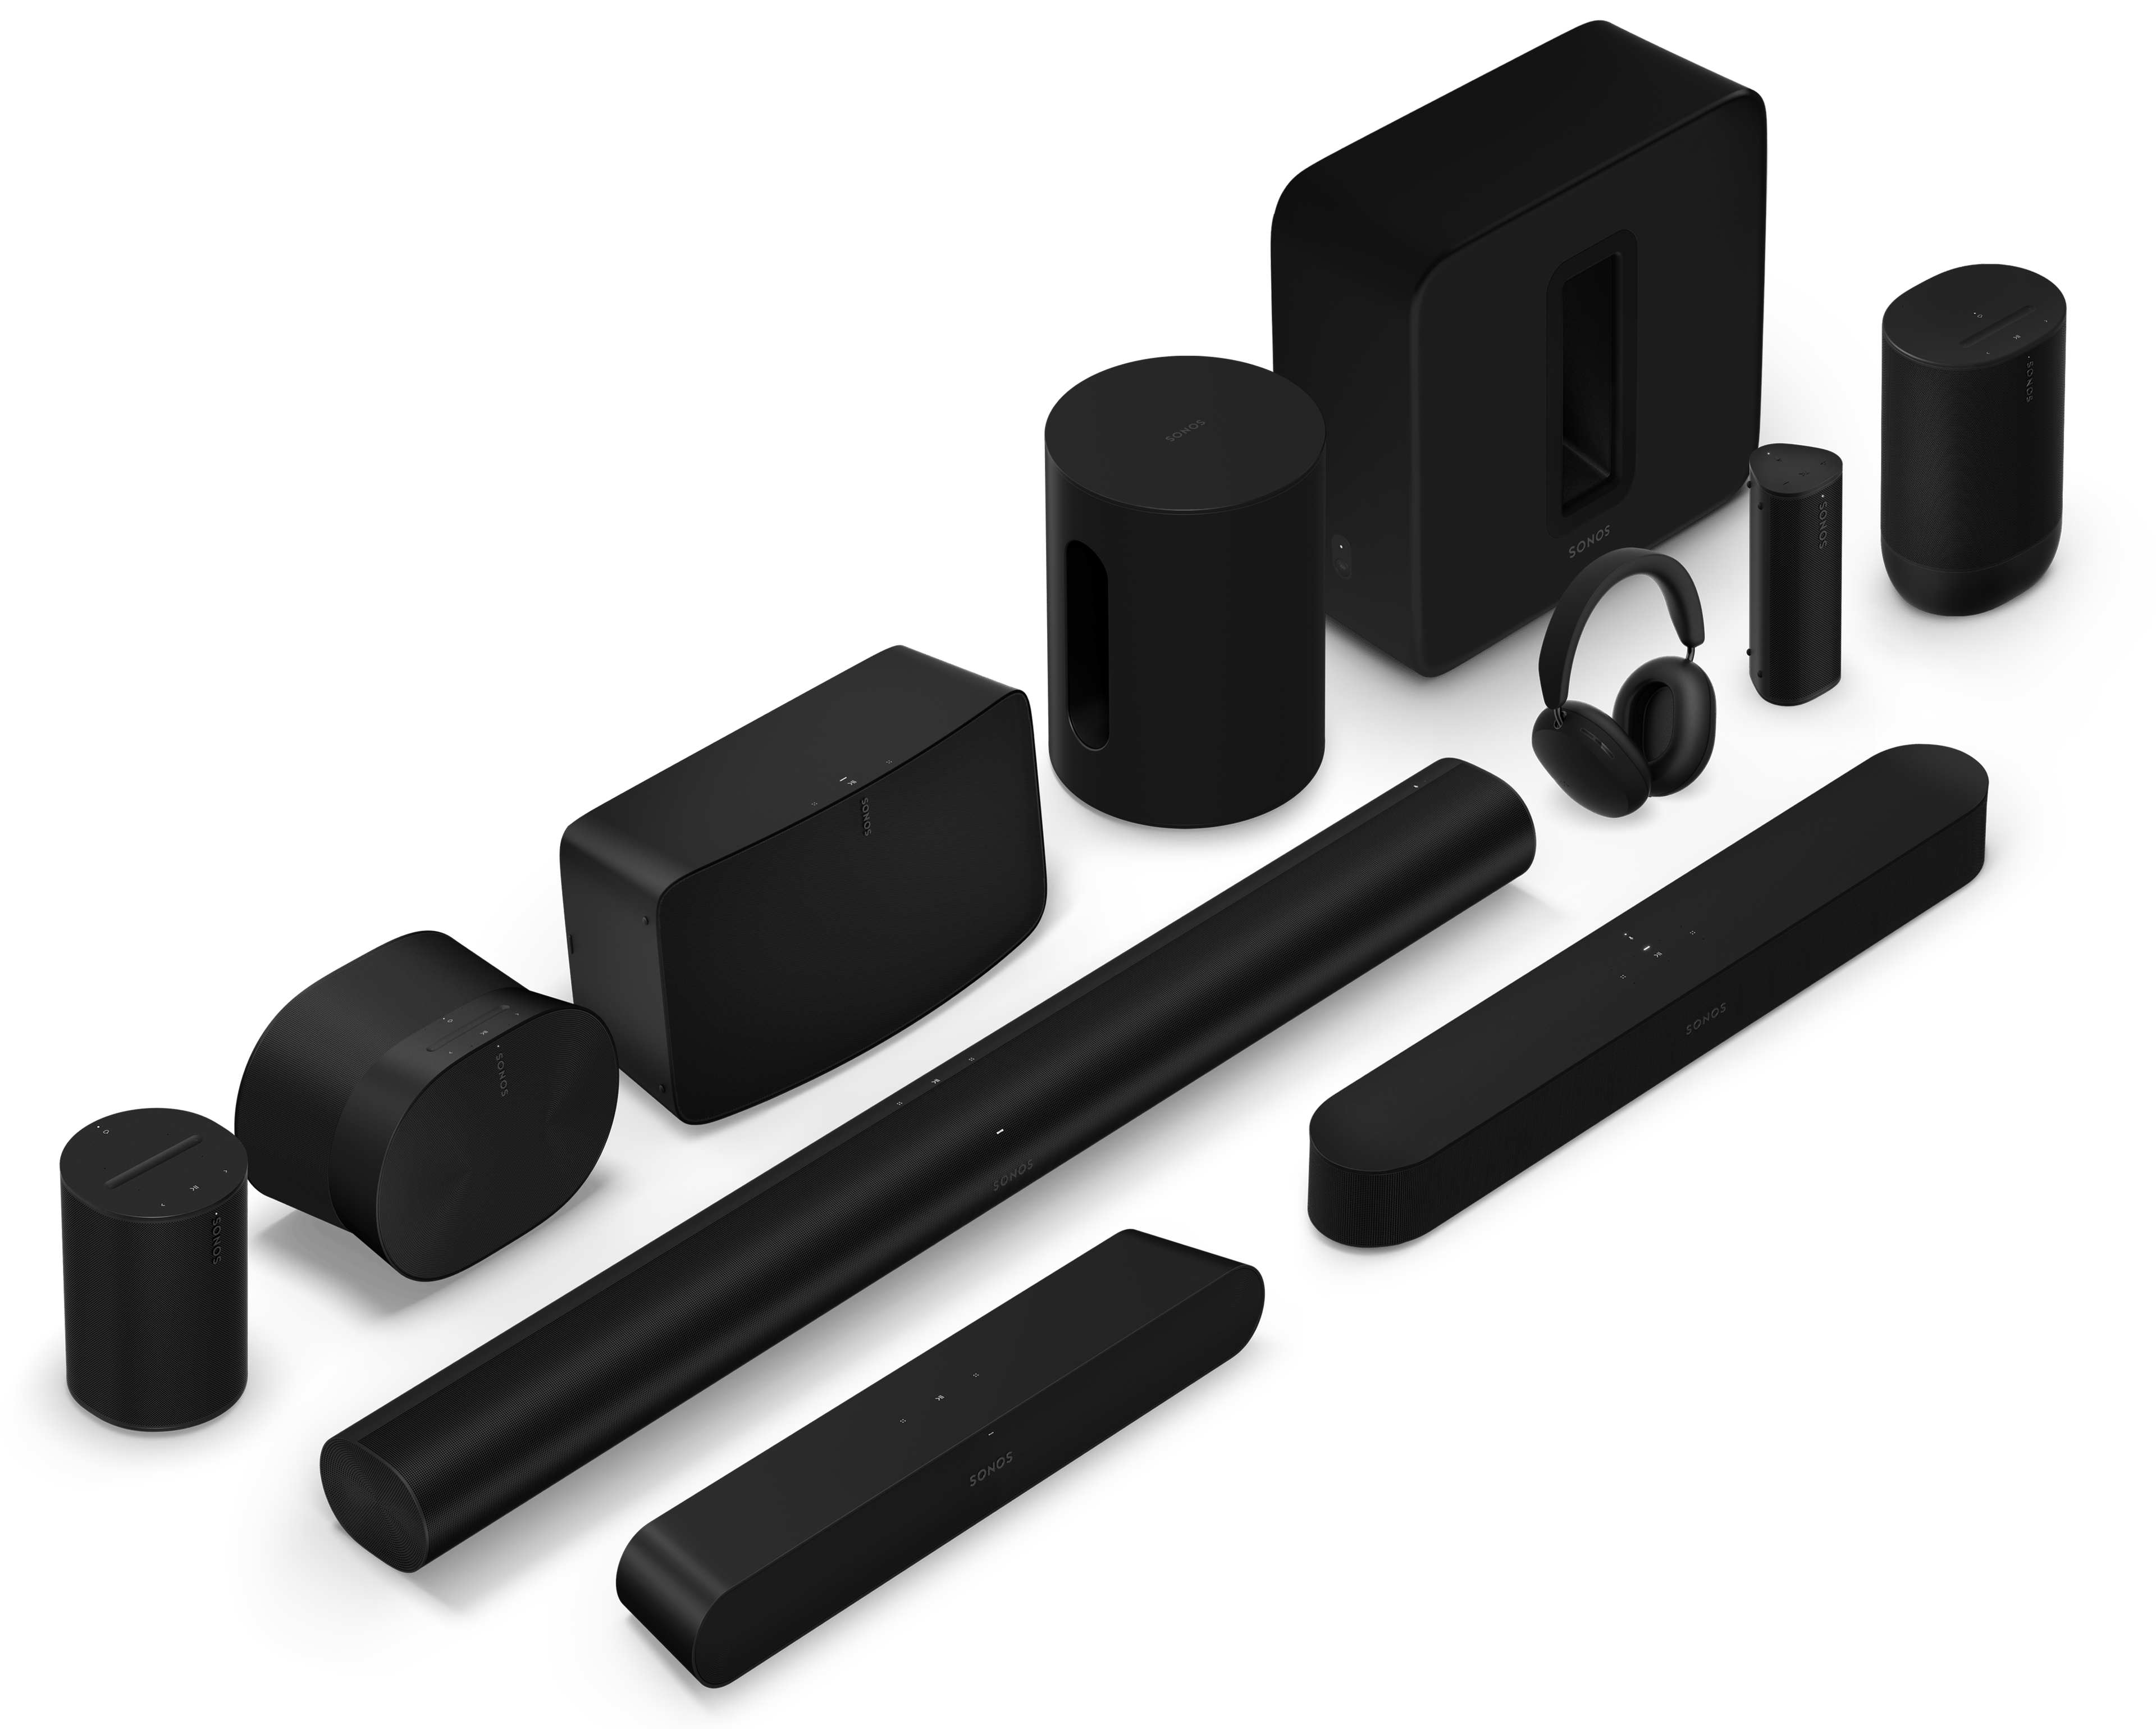 Línea completa de productos Sonos en negro